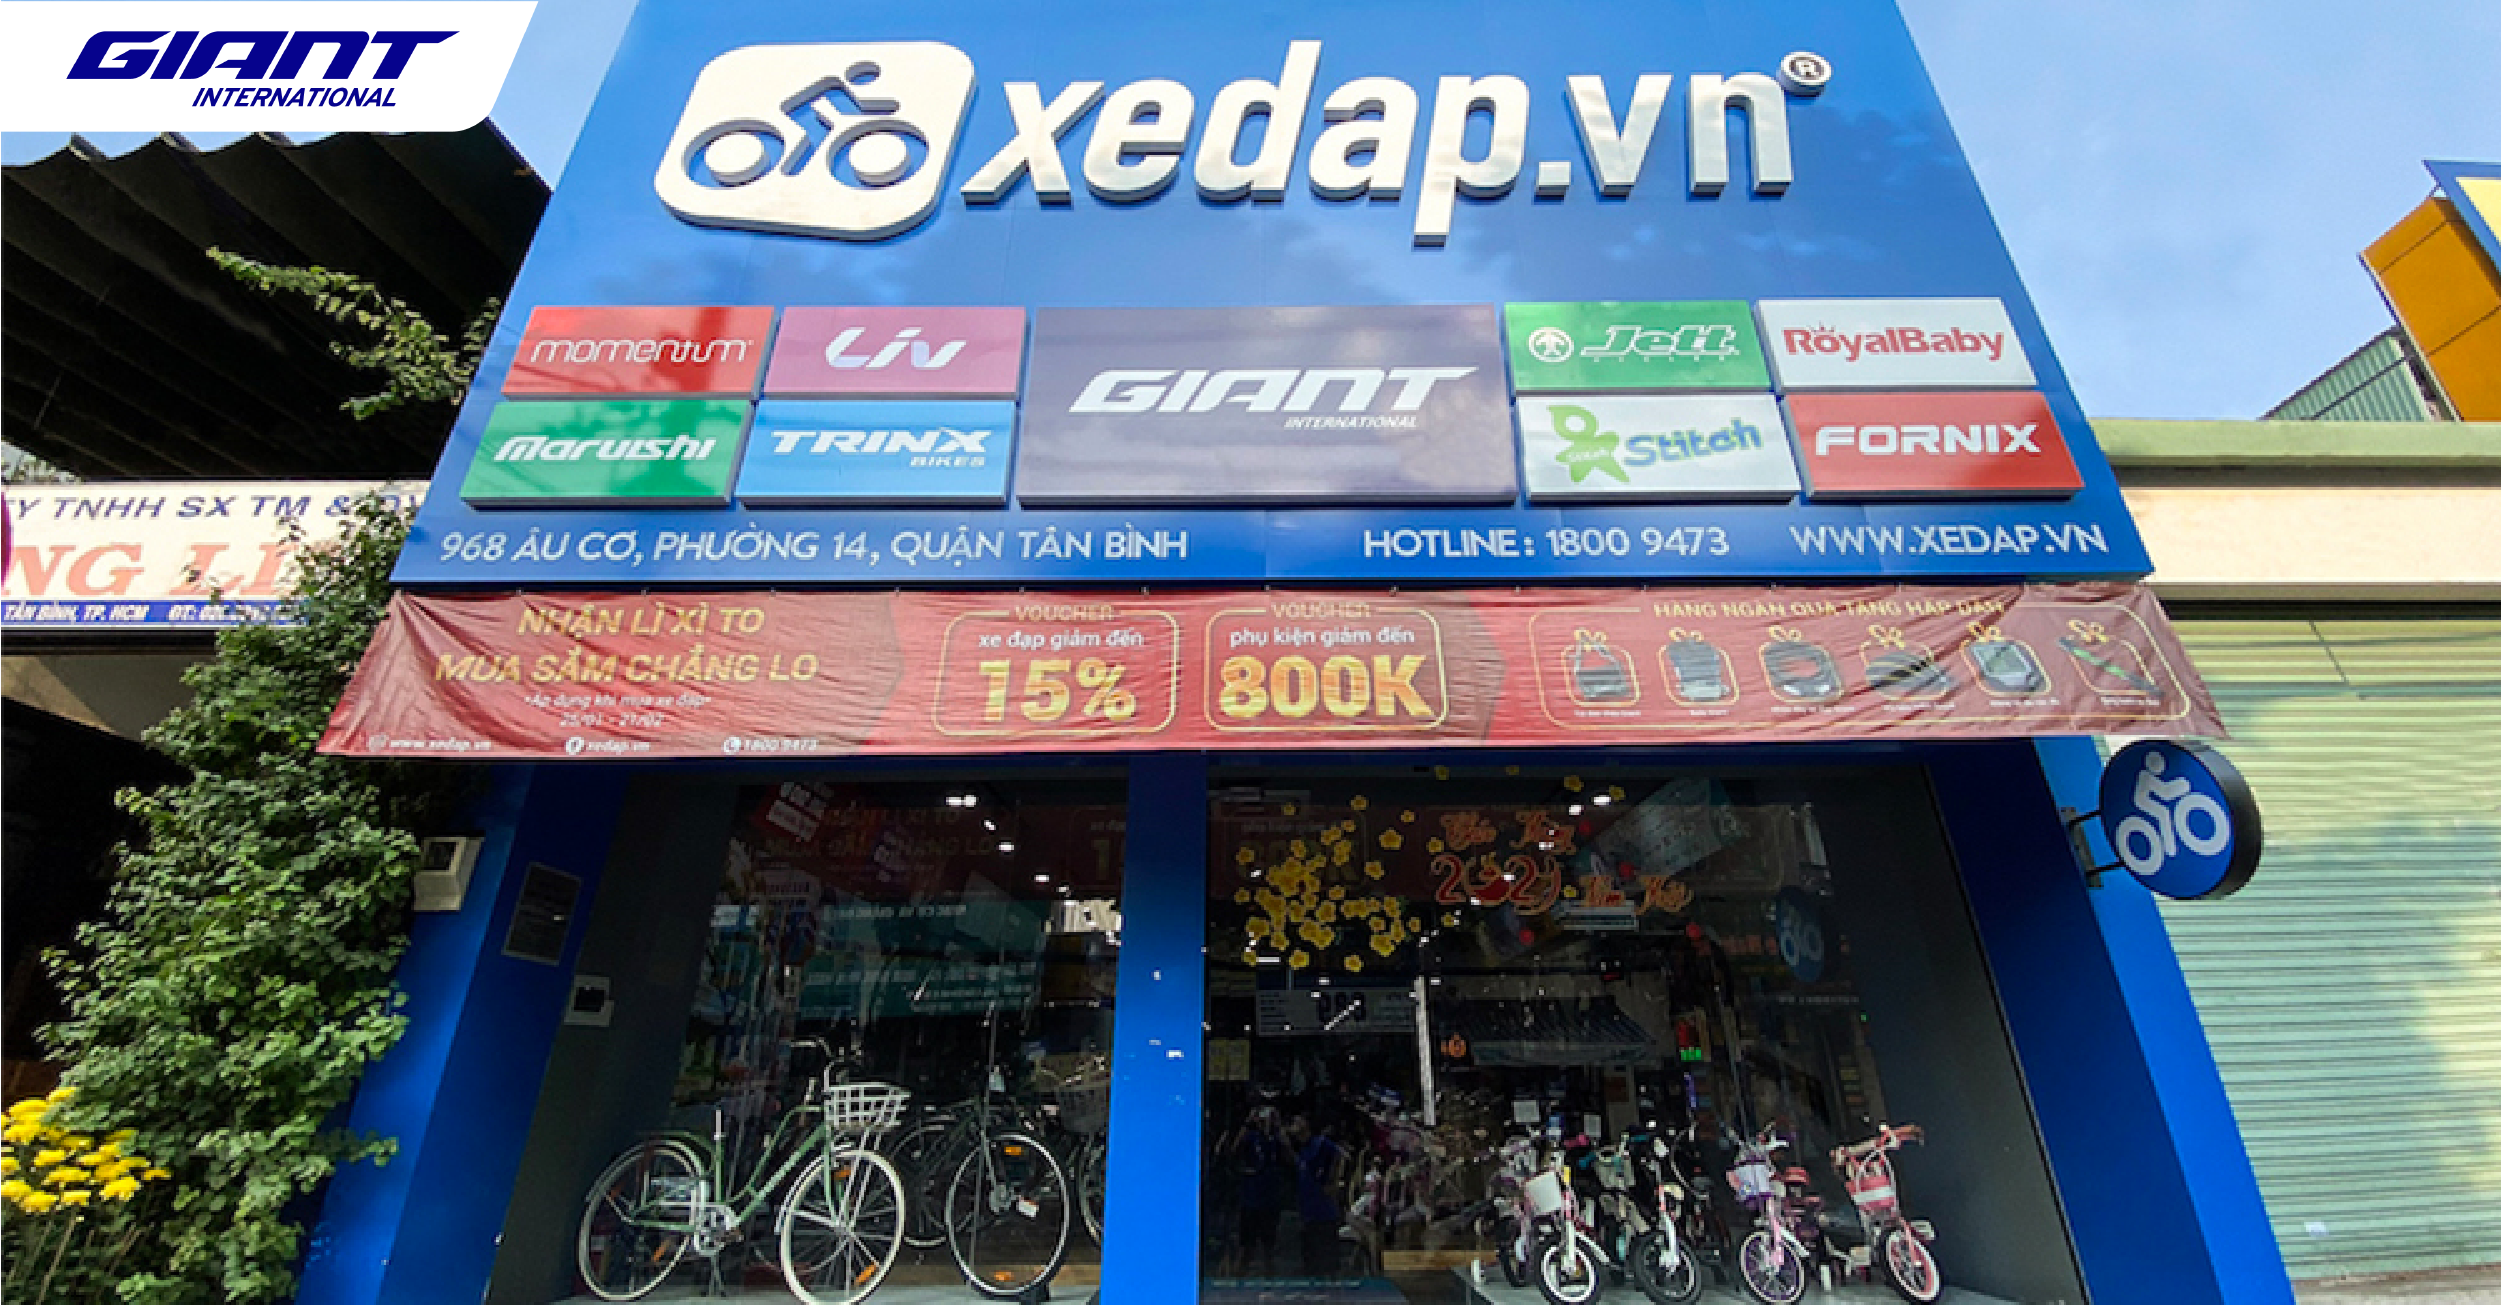 Mừng khai trương cửa hàng Xedap.vn thứ 4 – Đại lý xe đạp Giant tại 968 Âu Cơ, Quận Tân Bình, TP.HCM